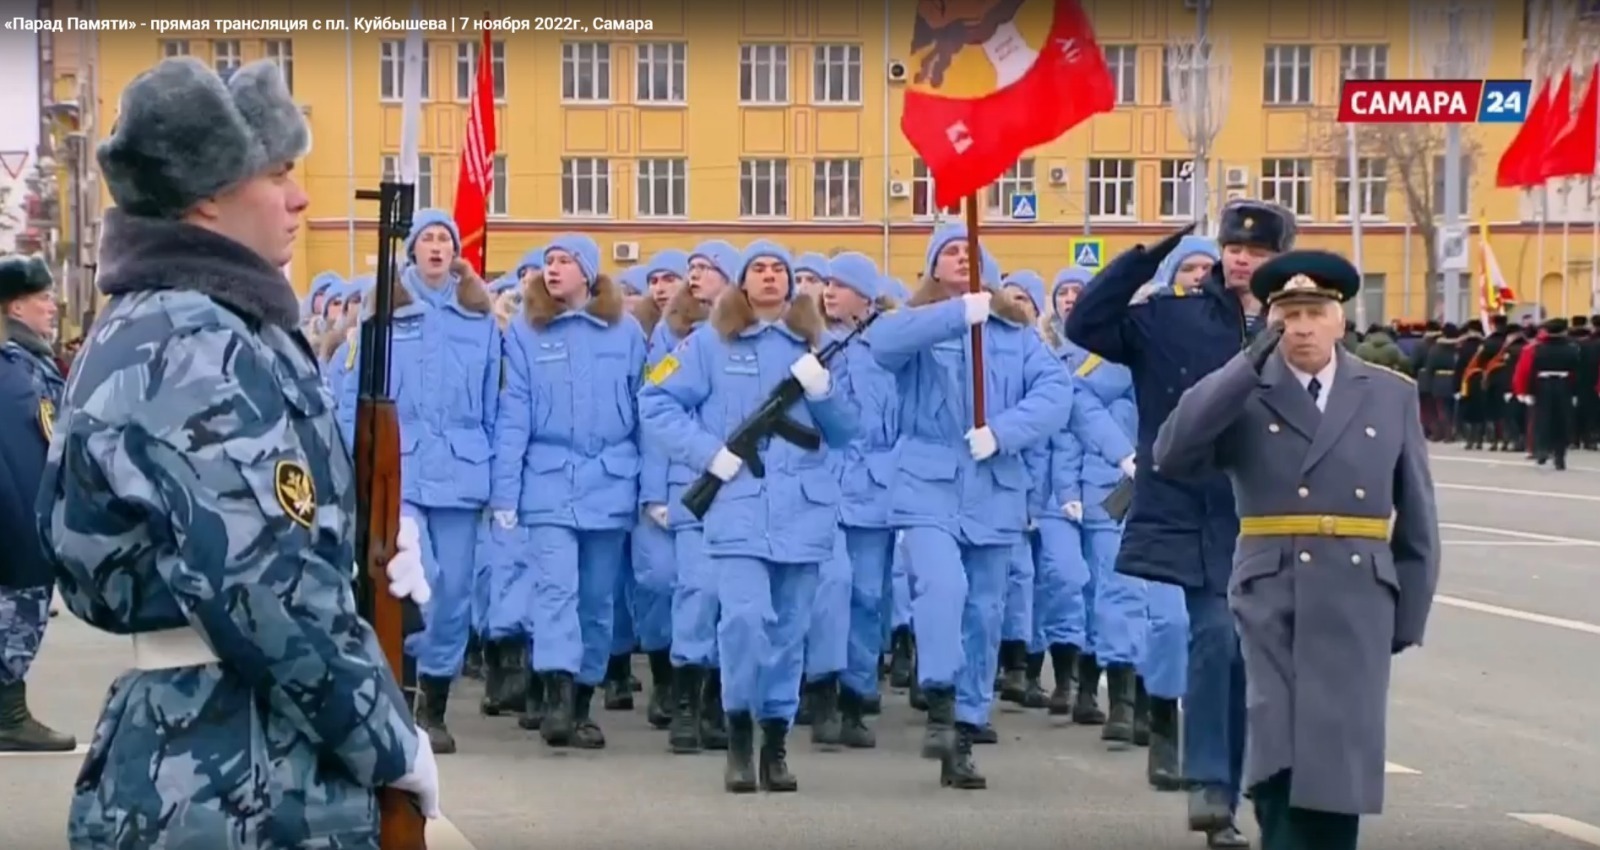 Уфимские кадеты прошли торжественным маршем на параде в Самаре